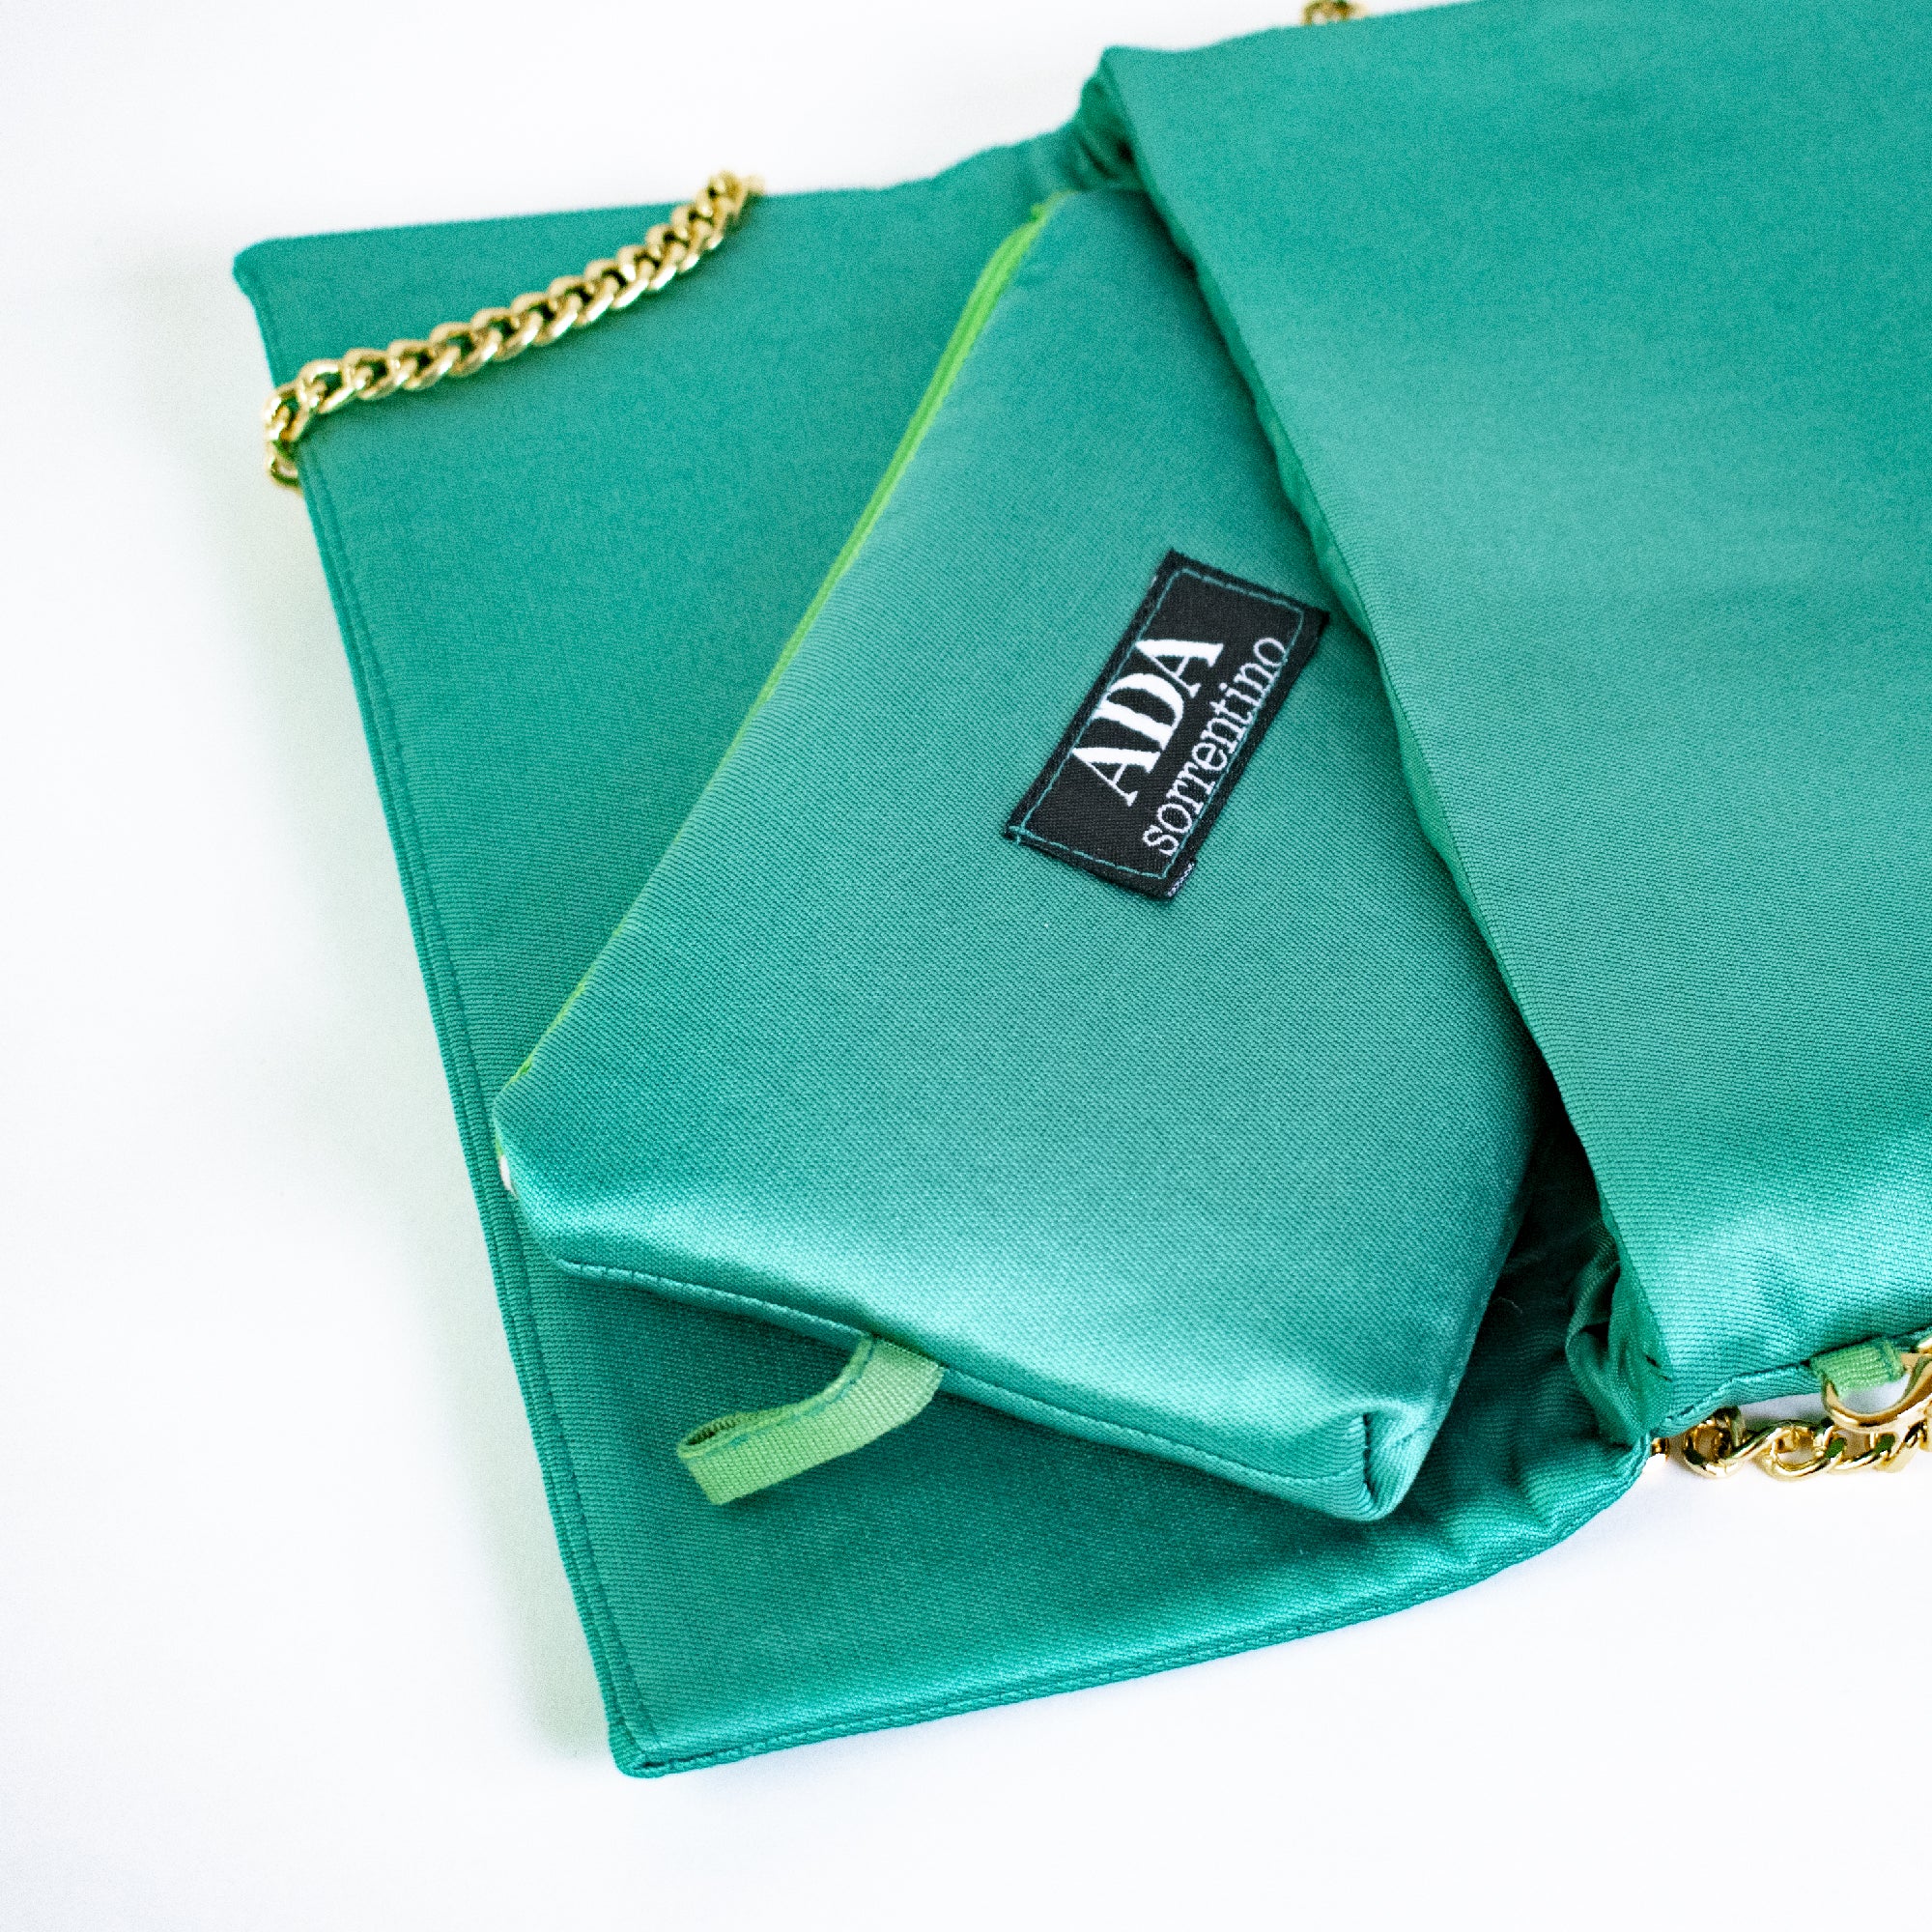 Aqua green clutch bag